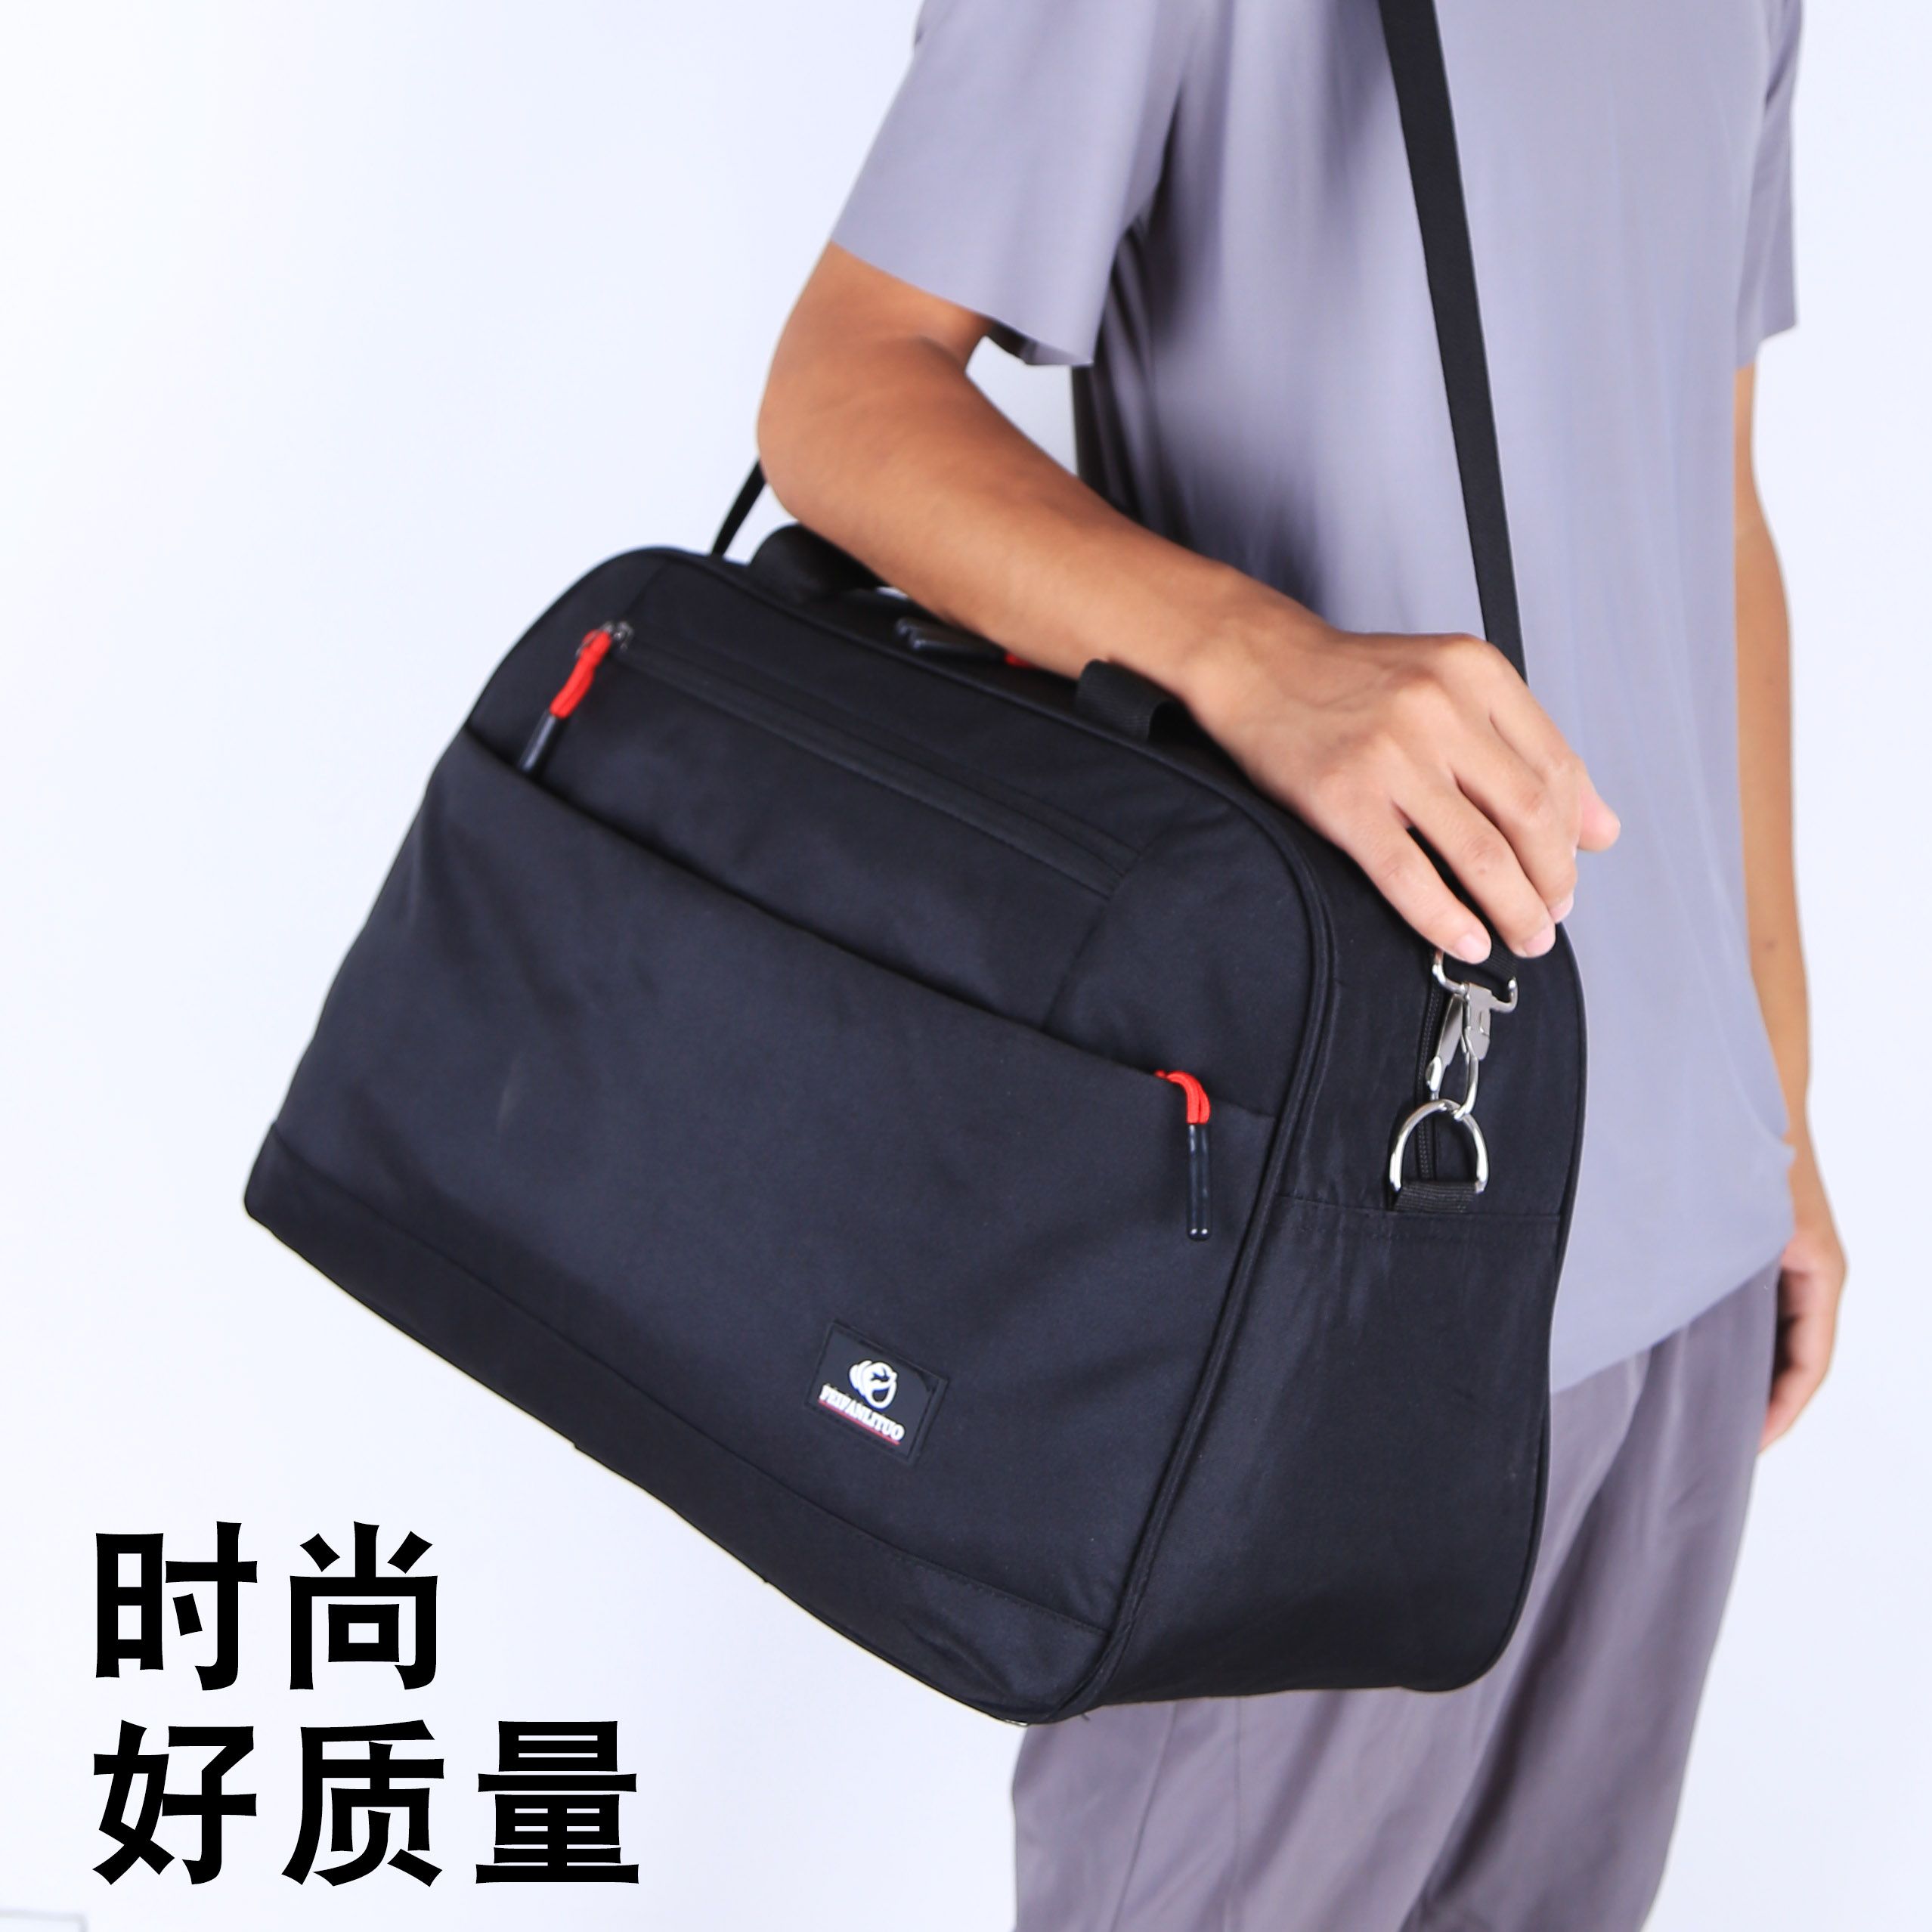 时尚运动手提旅行包女士行李袋韩版健身装衣服旅游出差单肩背包